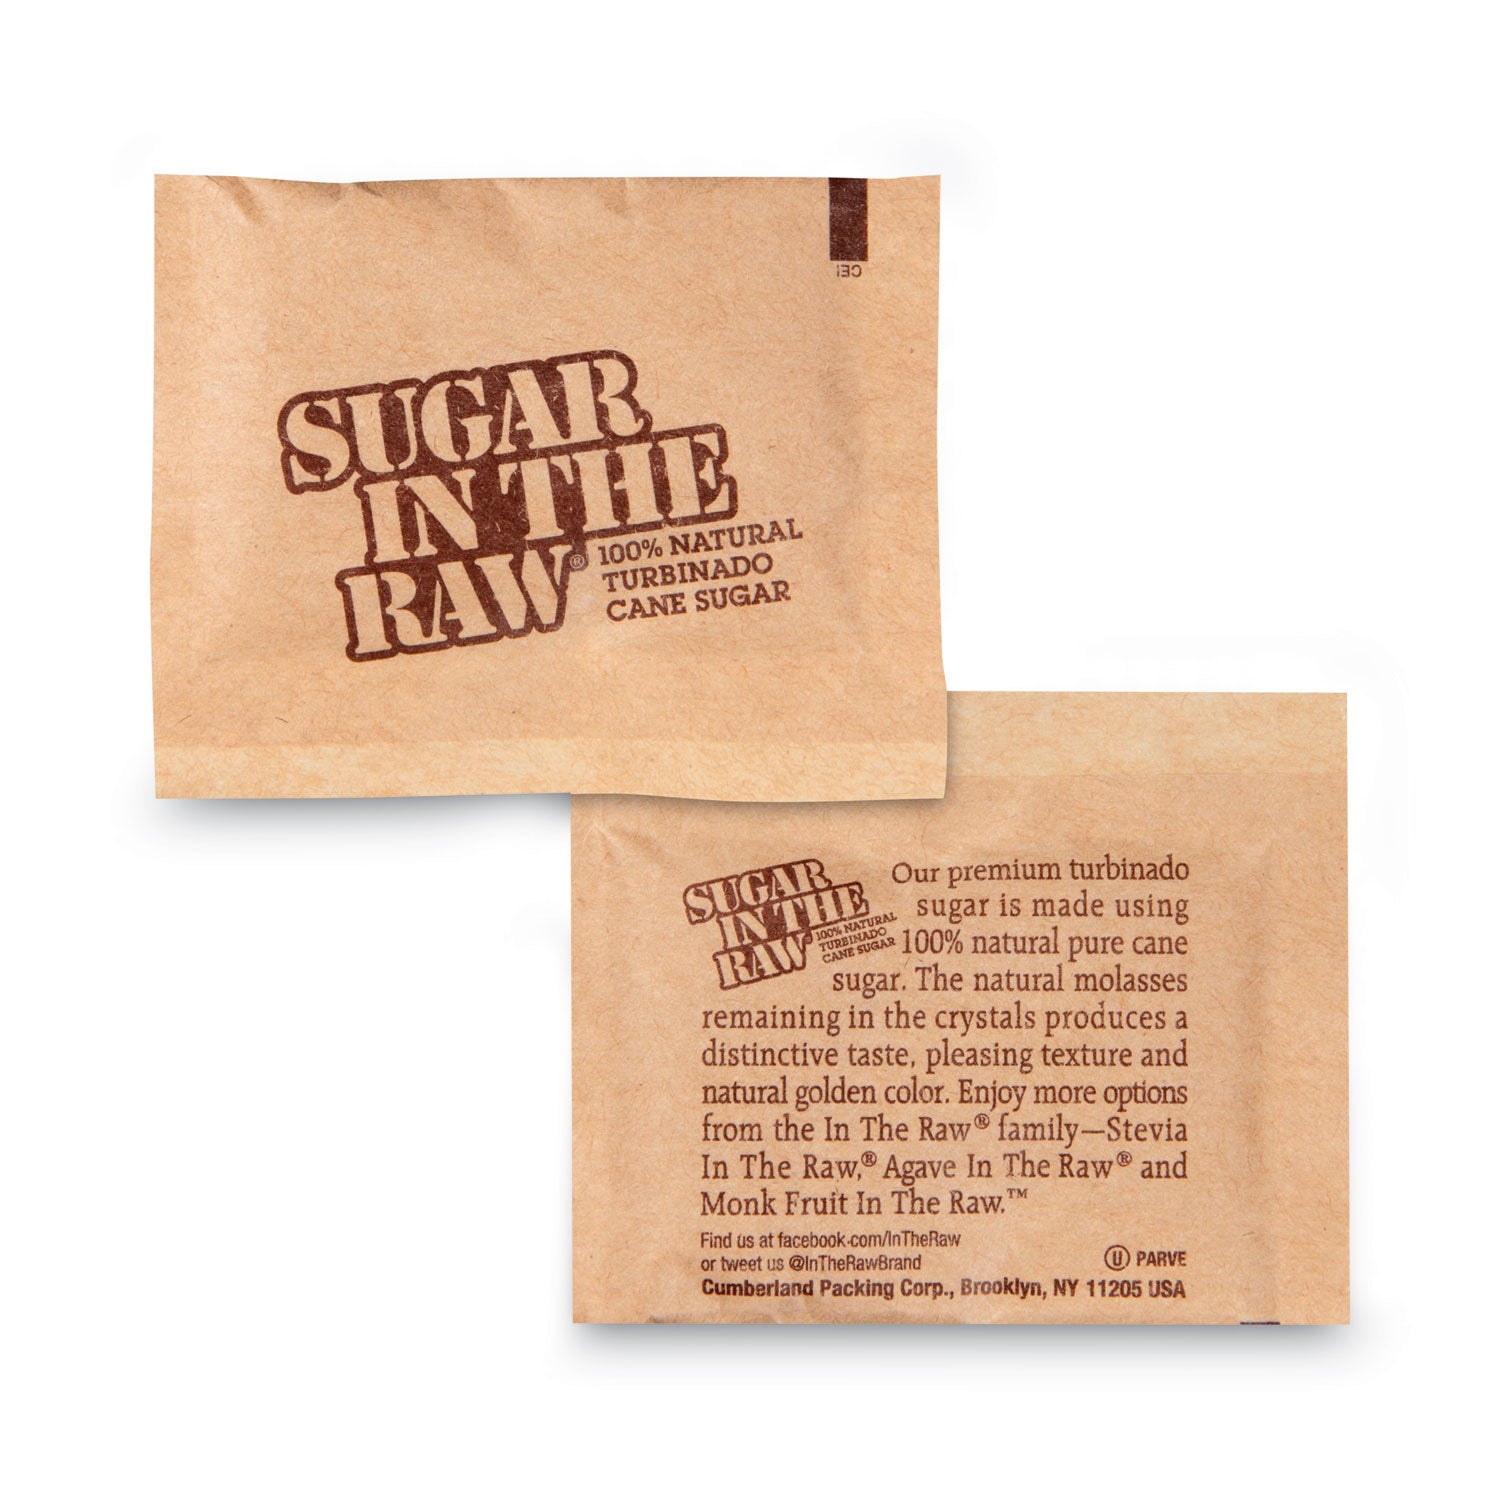 Sugar Packets, 0.2 oz Packets, 200/Box - 